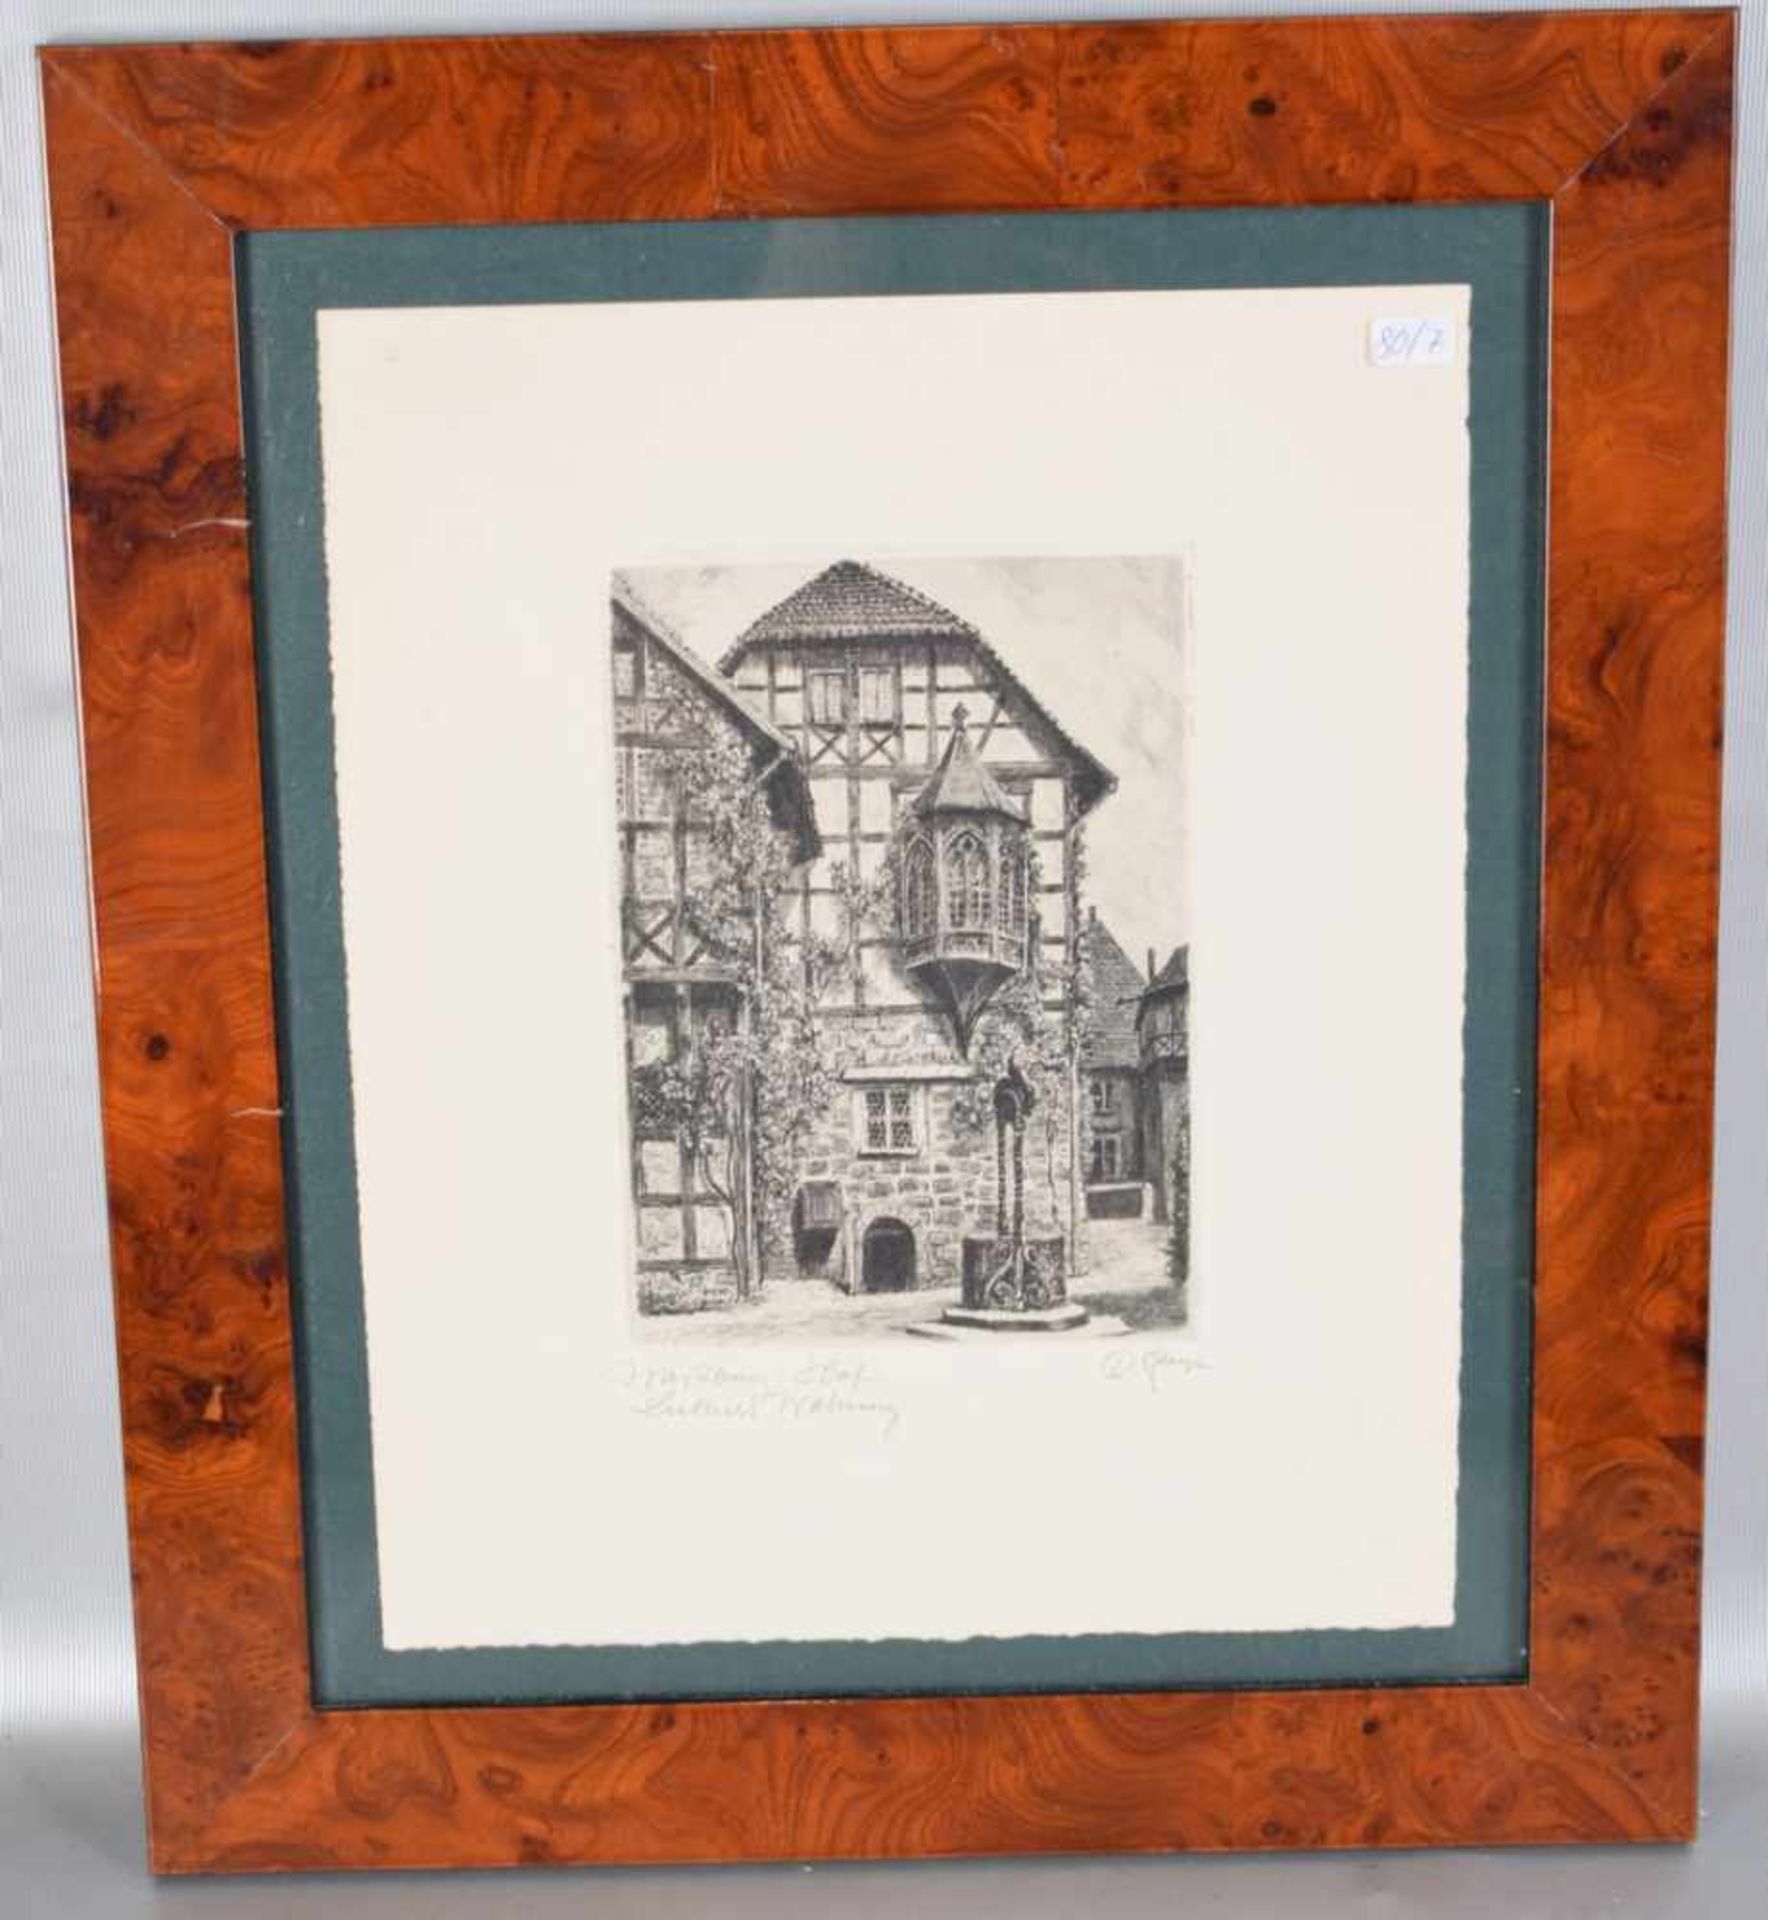 Radierung Hof der Wartburg, mit Luthers Wohnung, Blattgröße 13 X 18 cm, im Rahmen, 35 X 41 cm